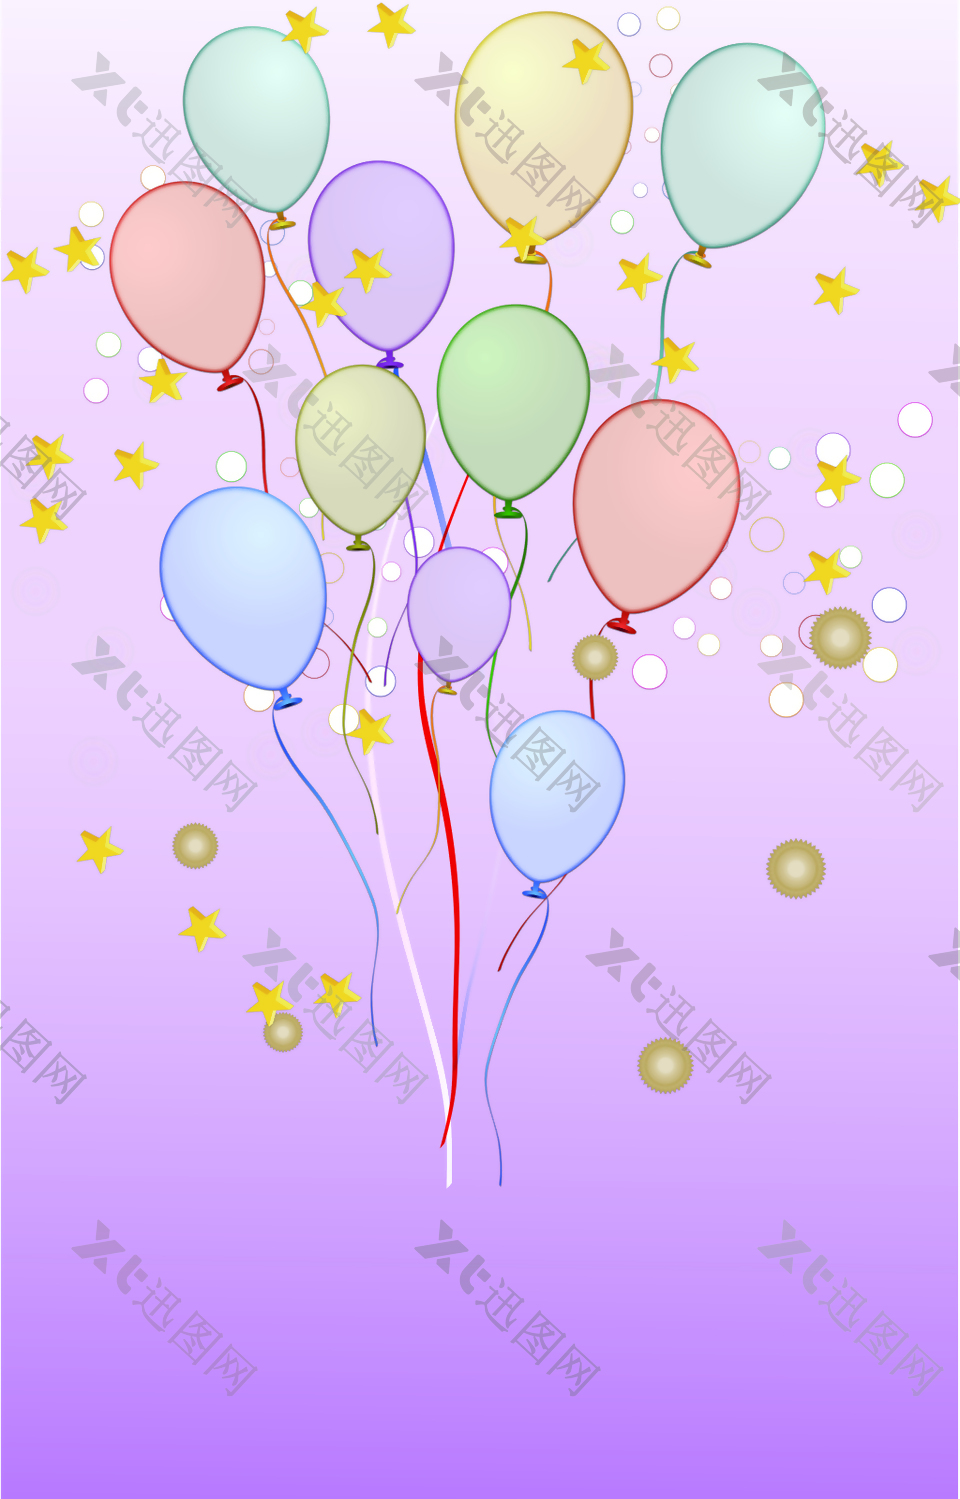 彩色飞起来的气球背景素材